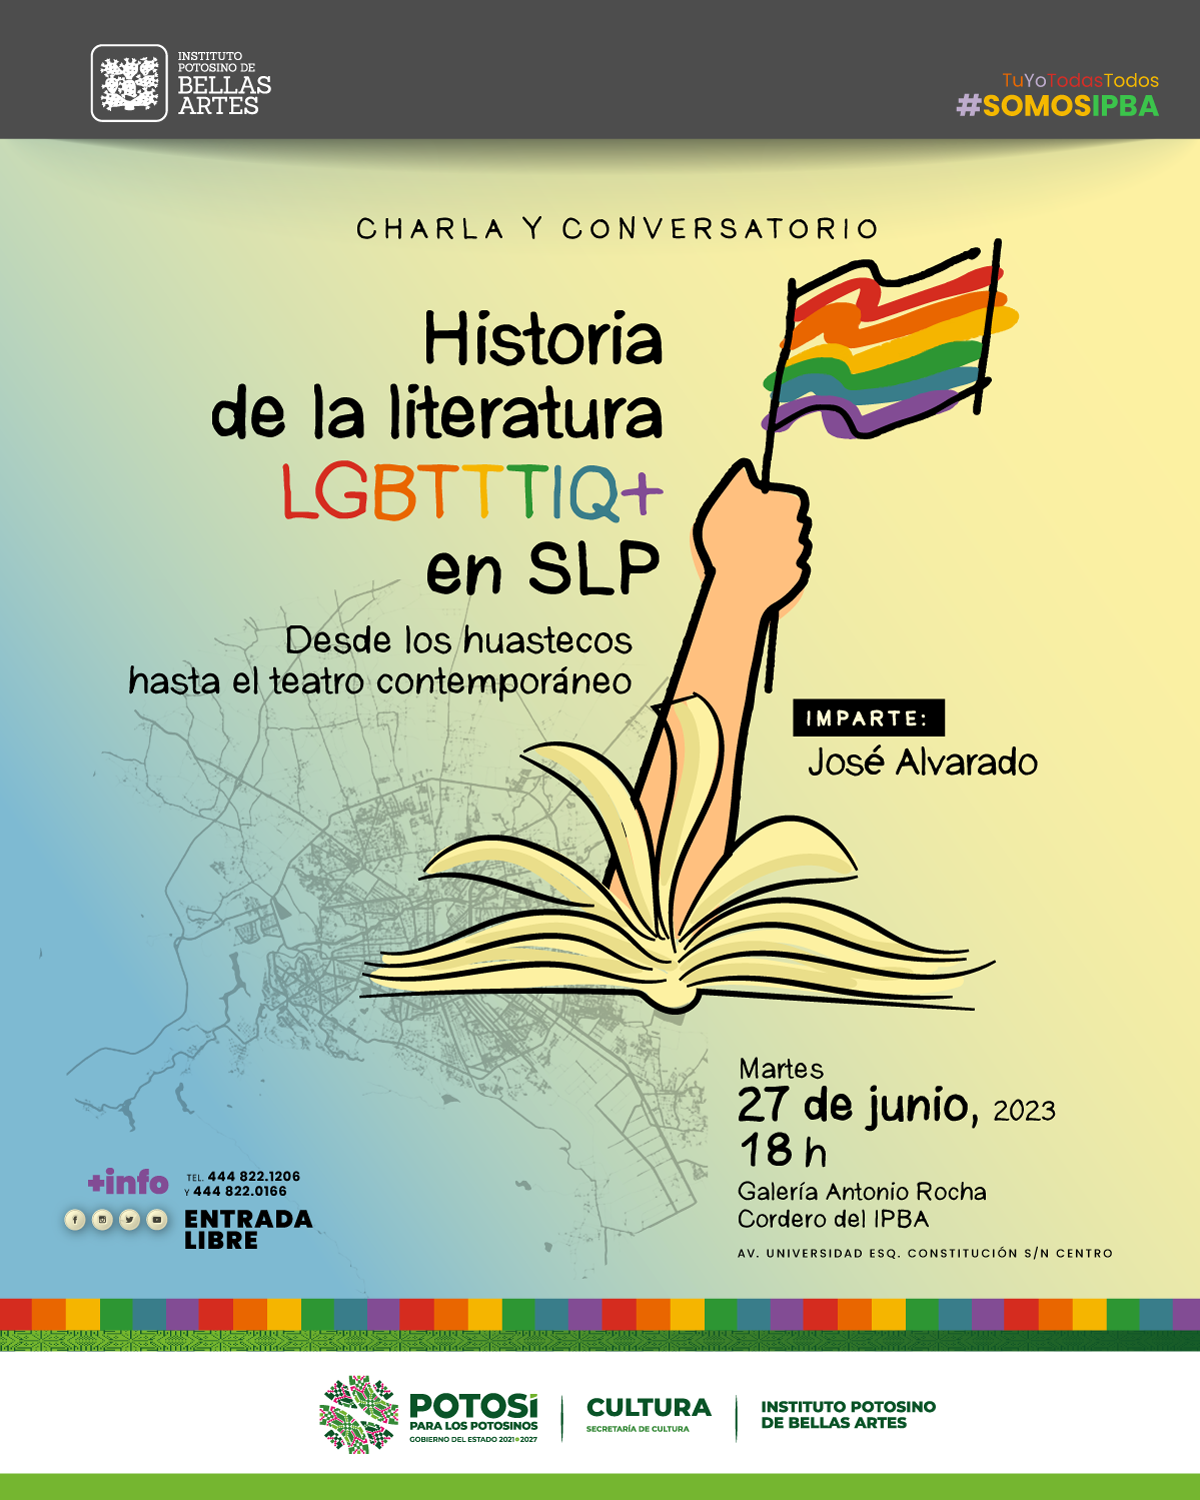 Sesión a cargo de José Alvarado del área de Literatura y se llevará a cabo el próximo 27 de junio 2023 a las 18:00 horas